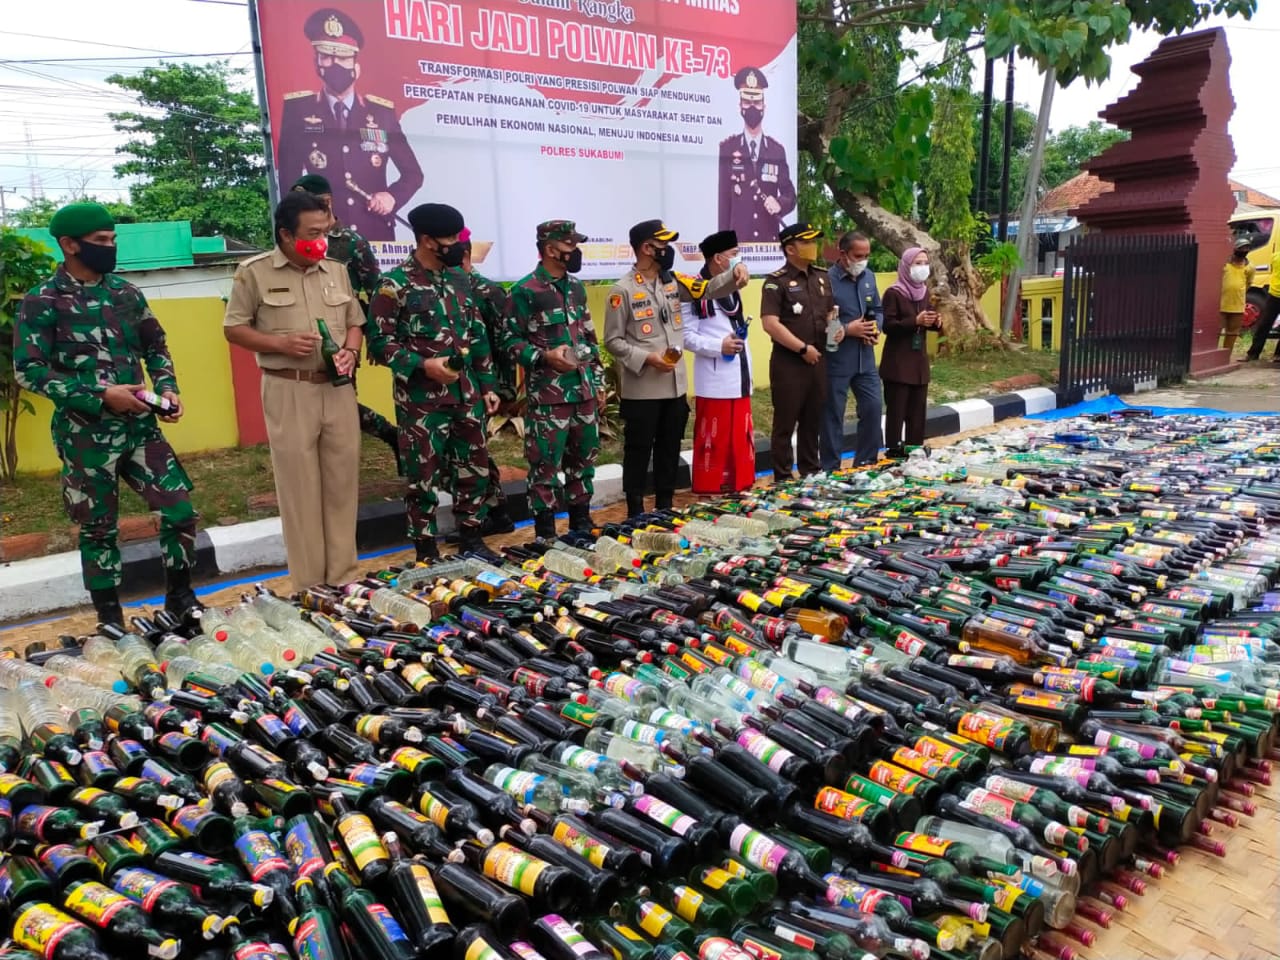 7350 Botol Miras Dimusnahkan Polres Sukabumi Dalam Rangka Hari Jadi Polwan Ke 73